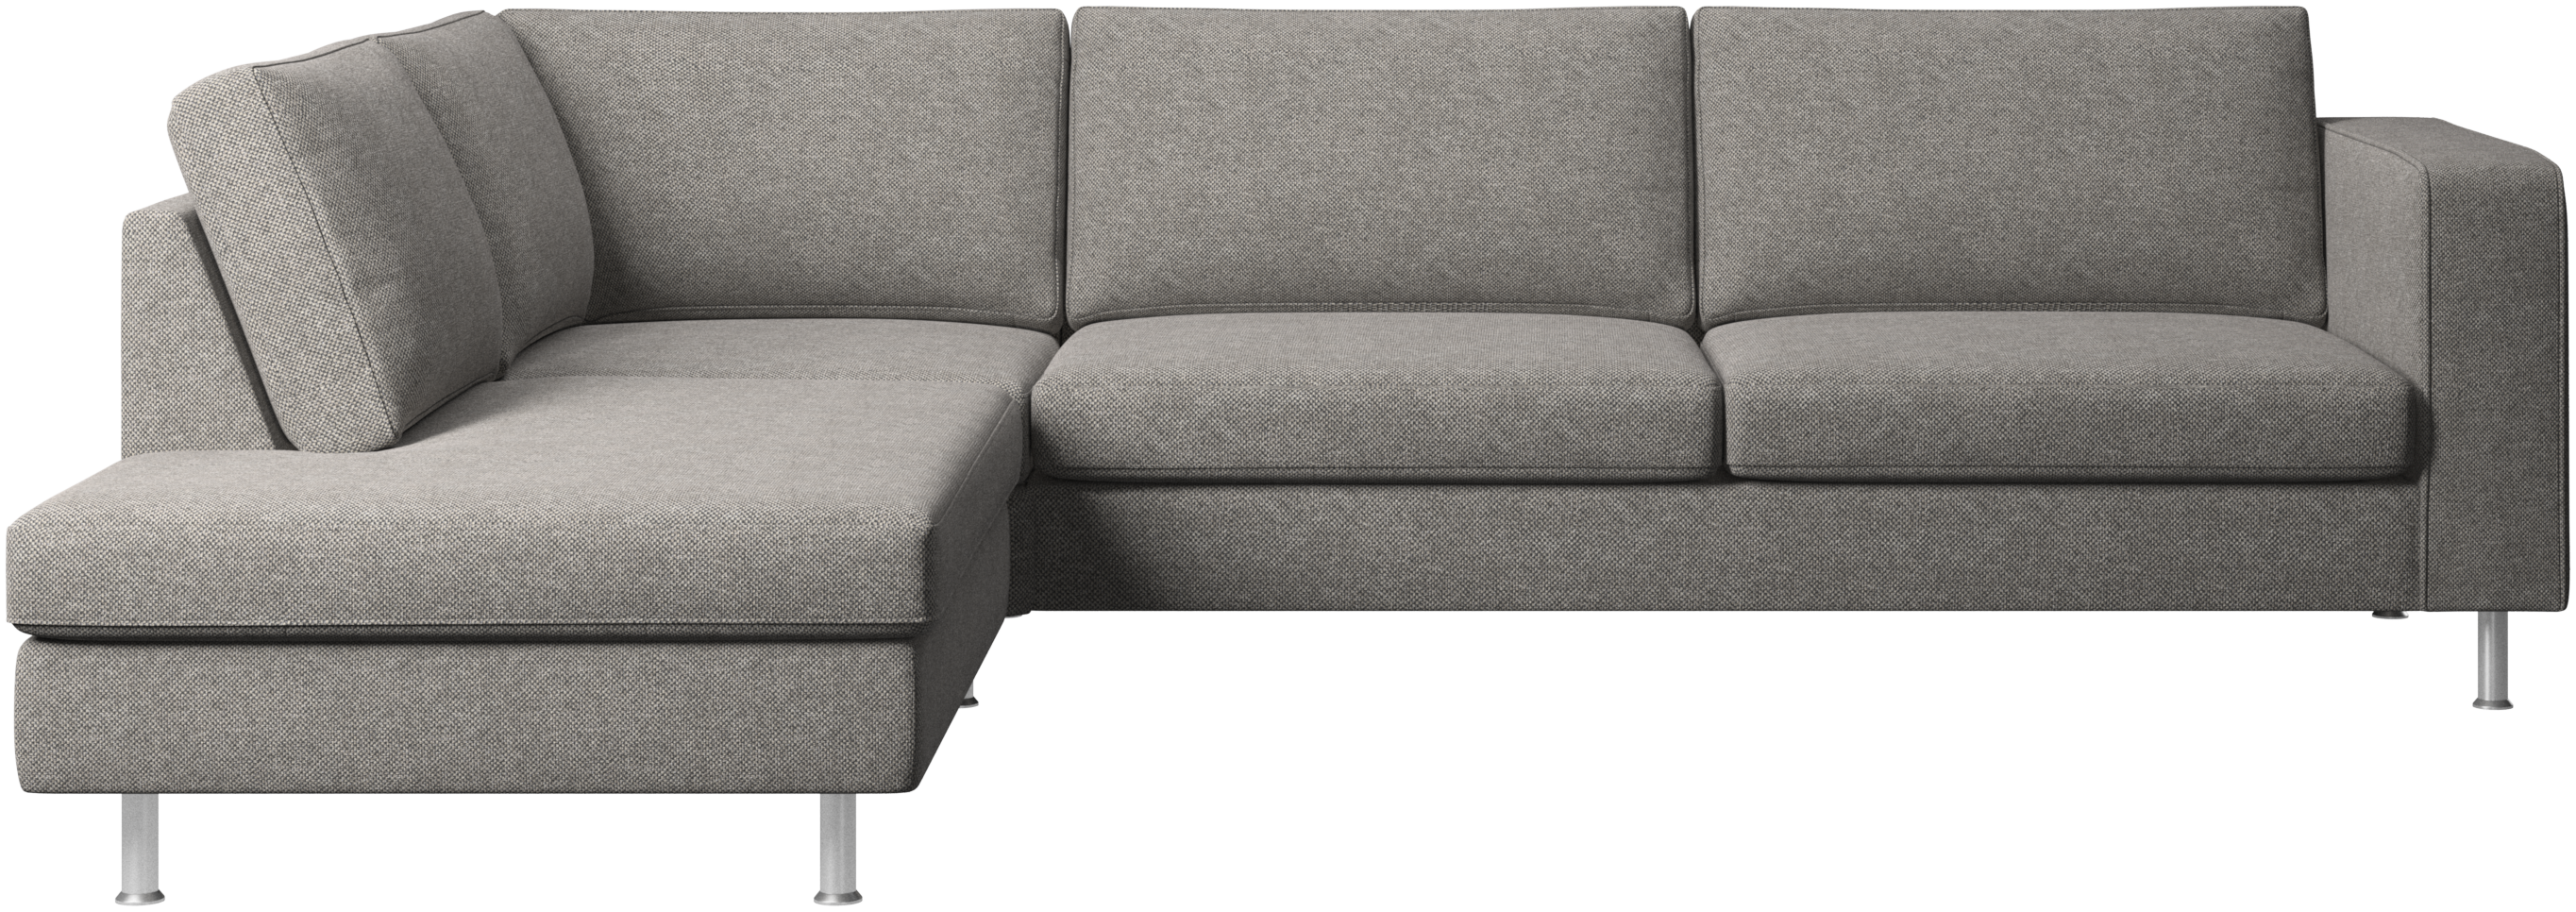 Indivi corner sofa with lounging unit | BoConcept